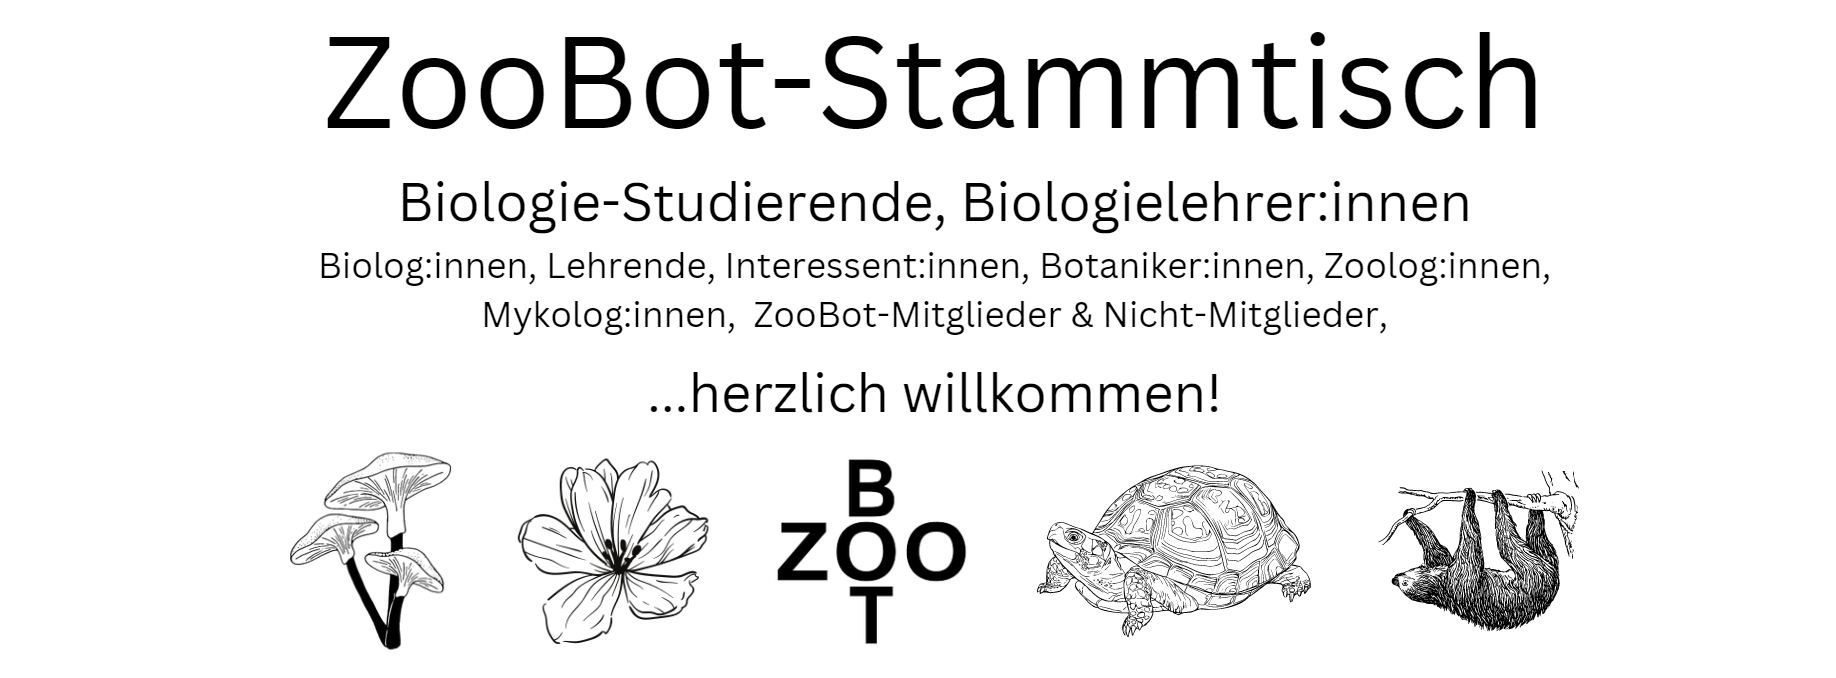 Wiener ZooBot-Stammtisch am 03.05.2023